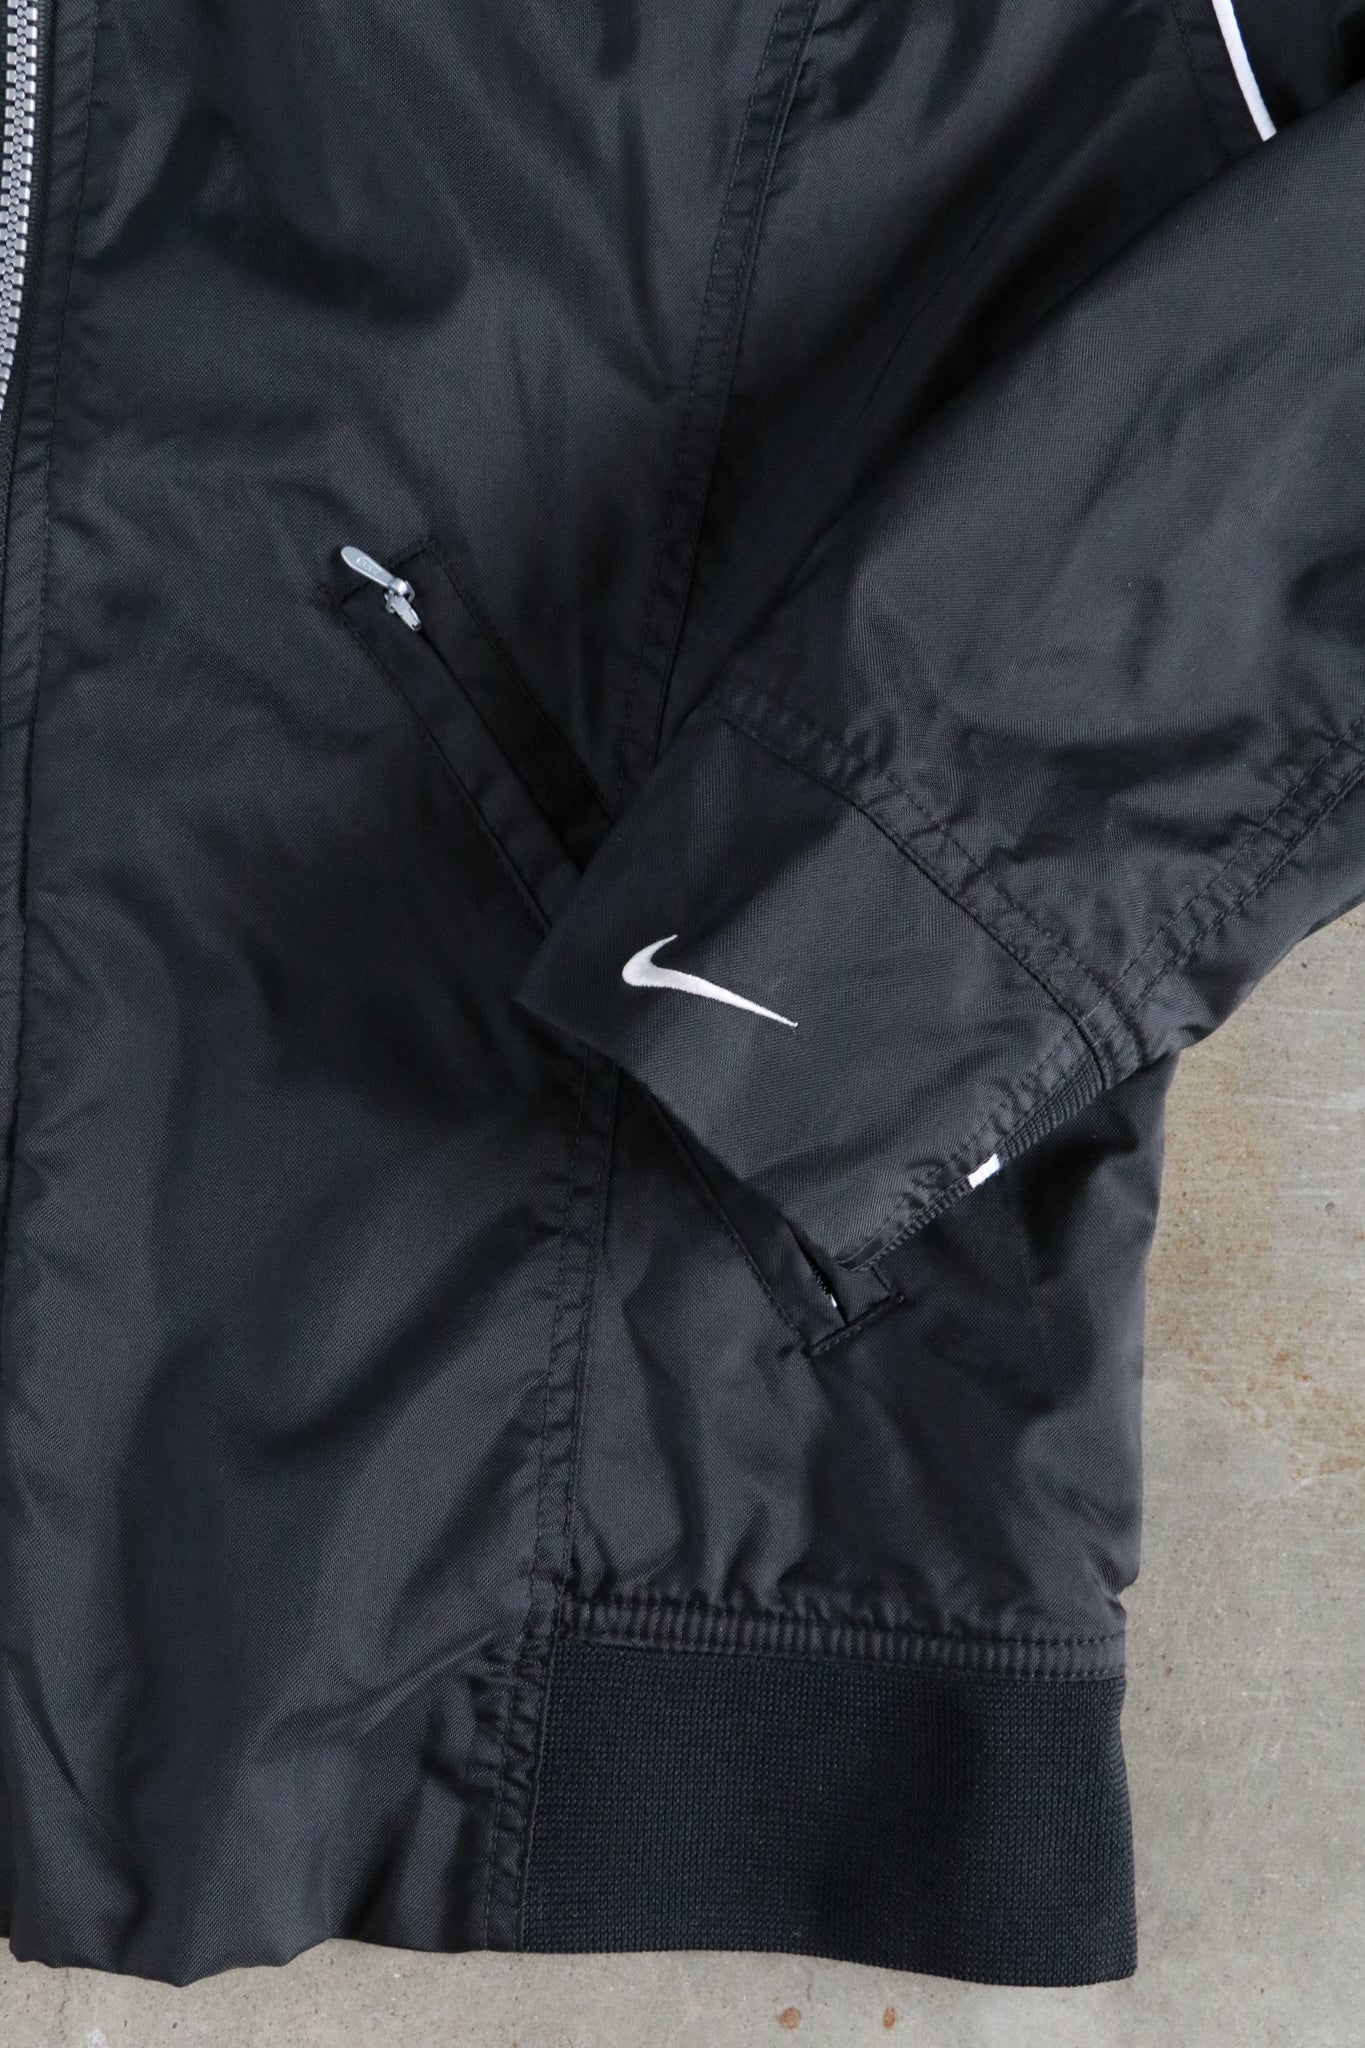 Vintage Nike Windbreaker Jacket Small